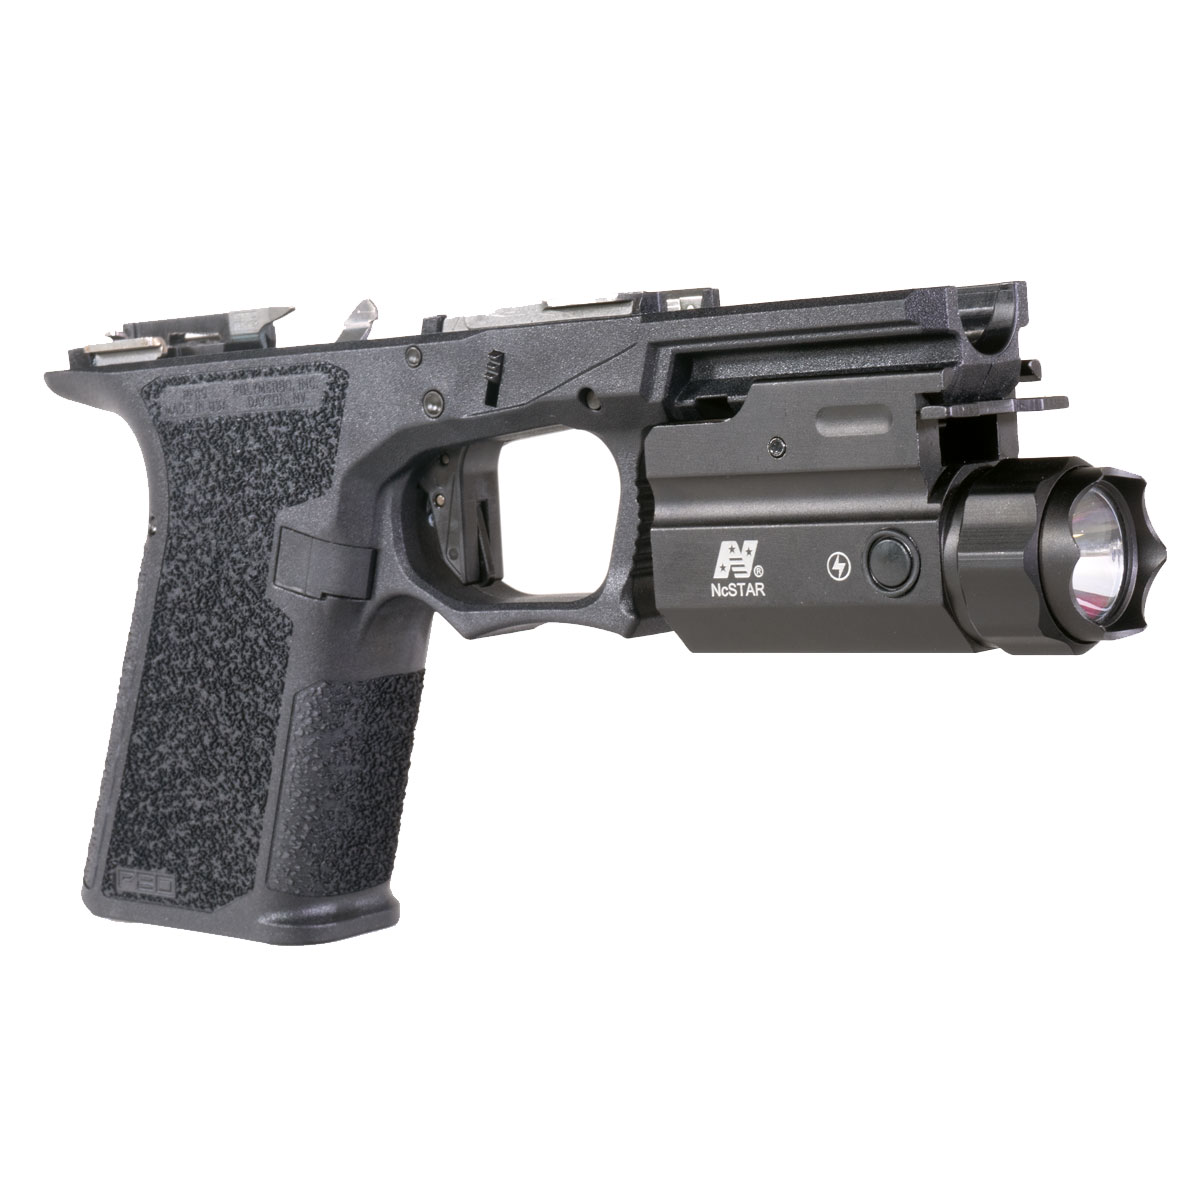 Frame Bundle: Polymer80 PFC9 Complete Pistol Frame + NcSTAR Quick-Release Mount Pistol Flashlight